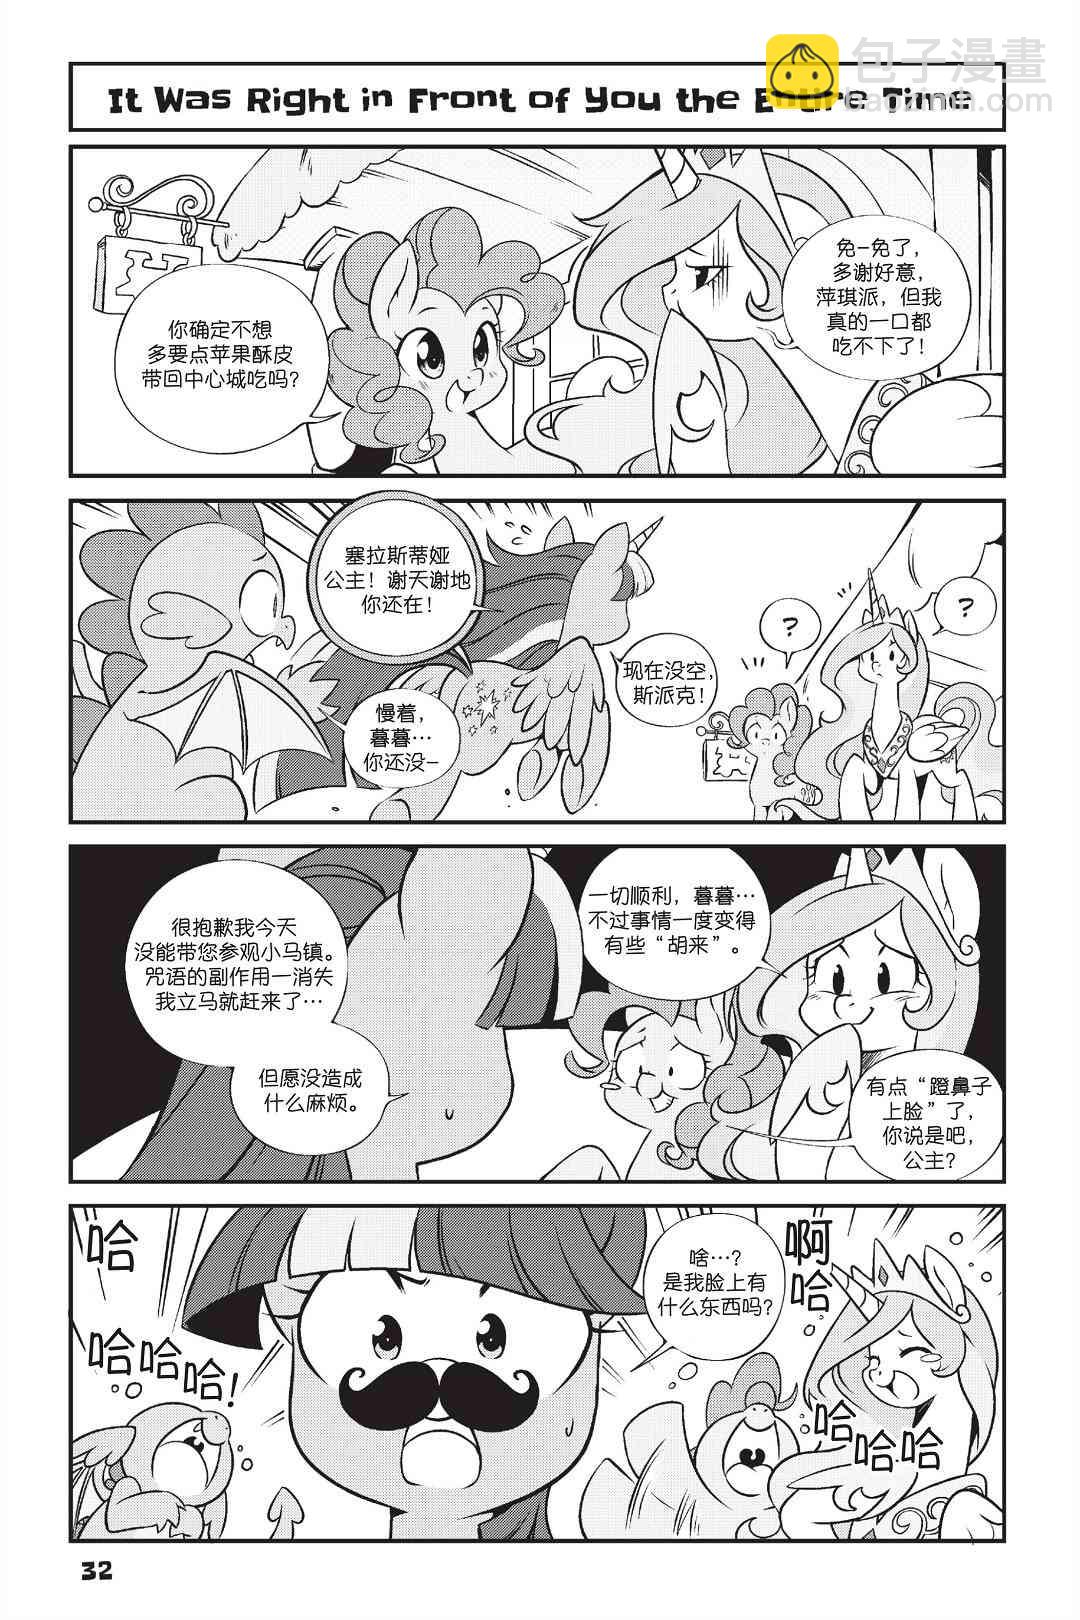 彩虹小馬G4：友情就是魔法 - 新日版漫畫第01部第02話 - 1